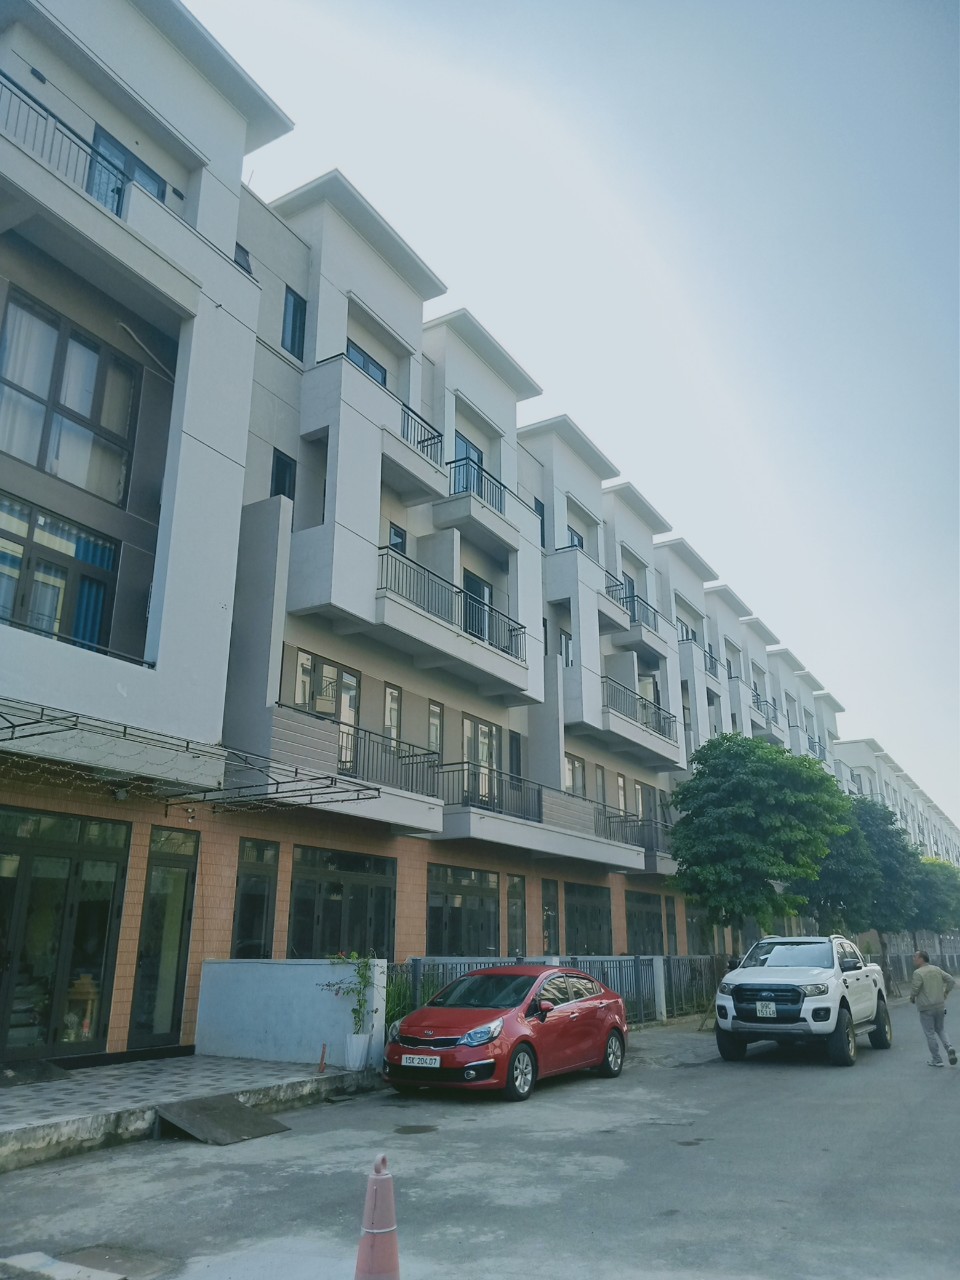 Shophouse VSIP Bắc Ninh, chỉ cần 1,8 tỷ - 2,1 tỷ đồng, lãi suất 0% trong 2 năm 1